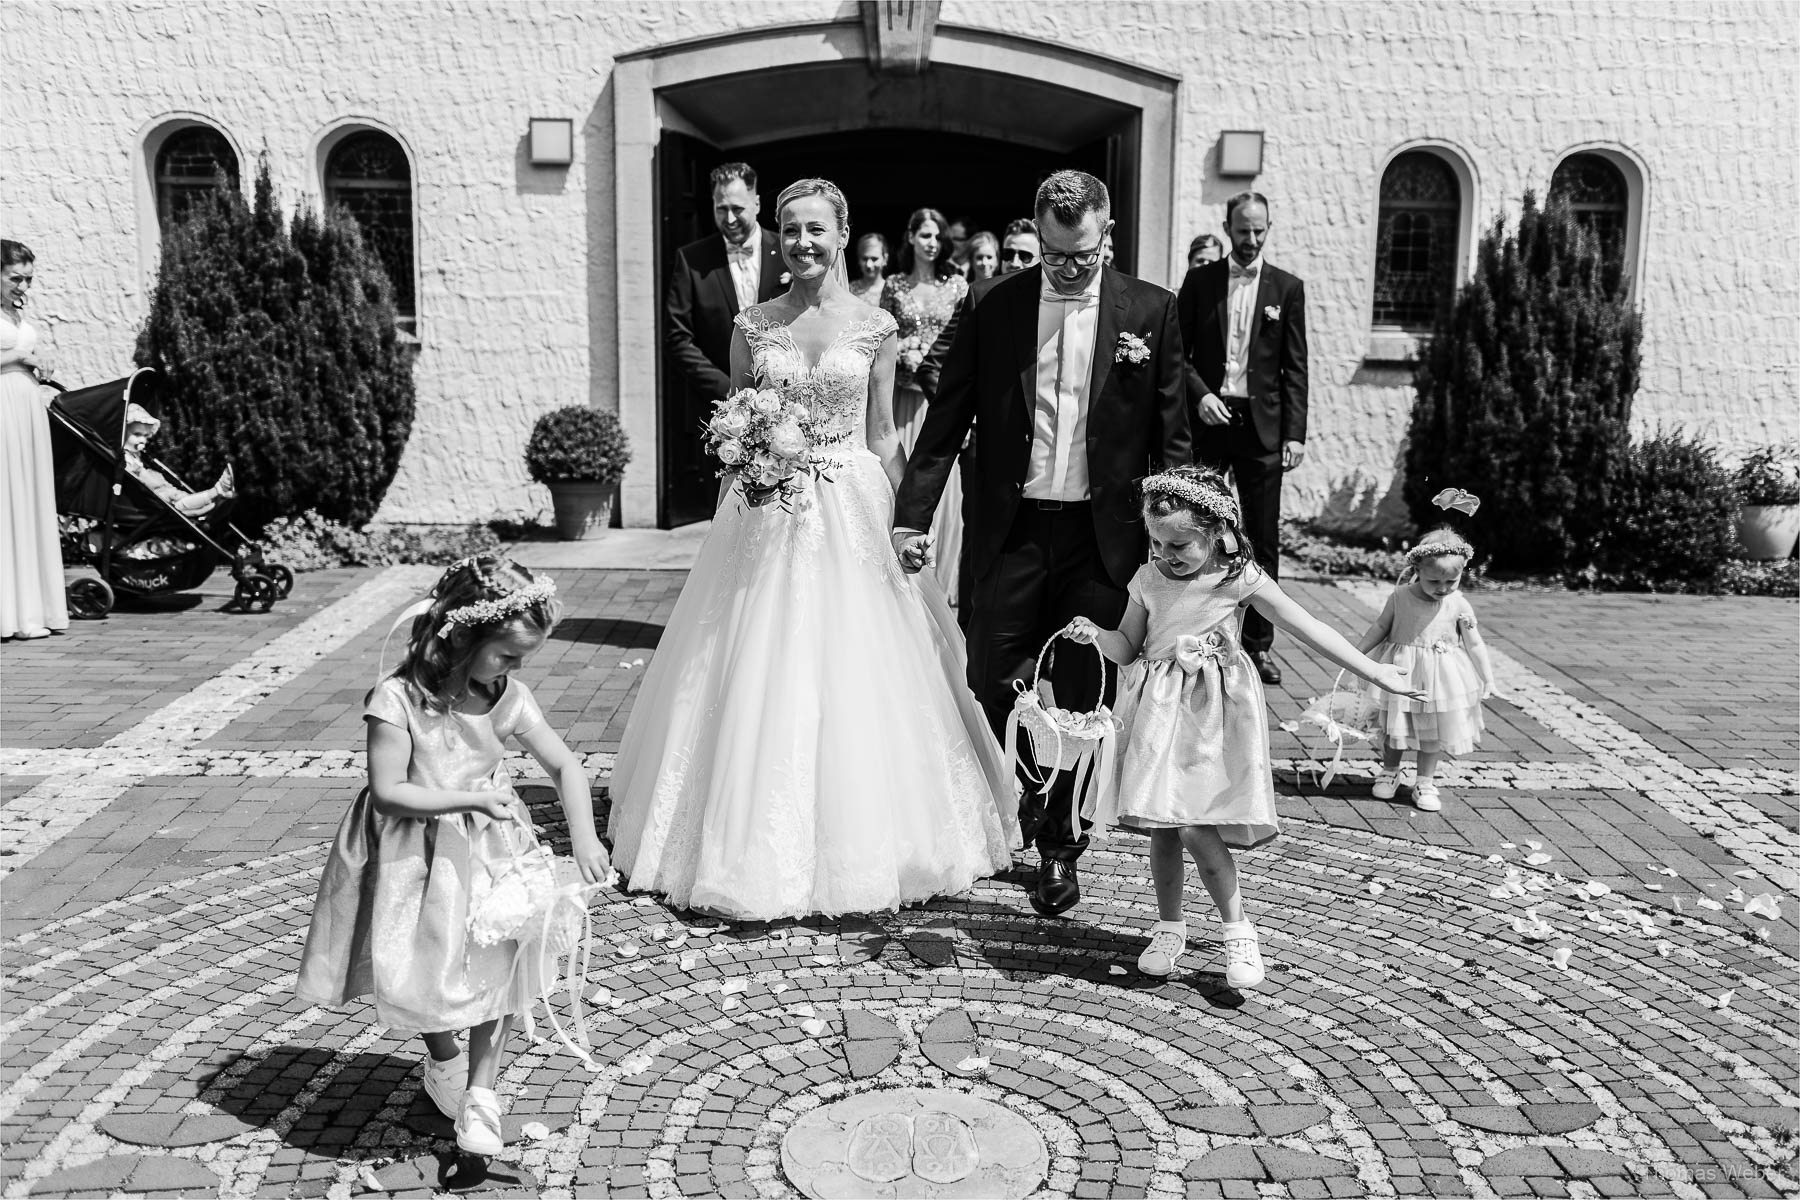 Die Gratulation der Hochzeitsgäste, Kirchliche Hochzeit in Rastede und Hochzeitsfeier in der Scheune St. Georg Rastede, Hochzeitsfotograf Thomas Weber aus Oldenburg